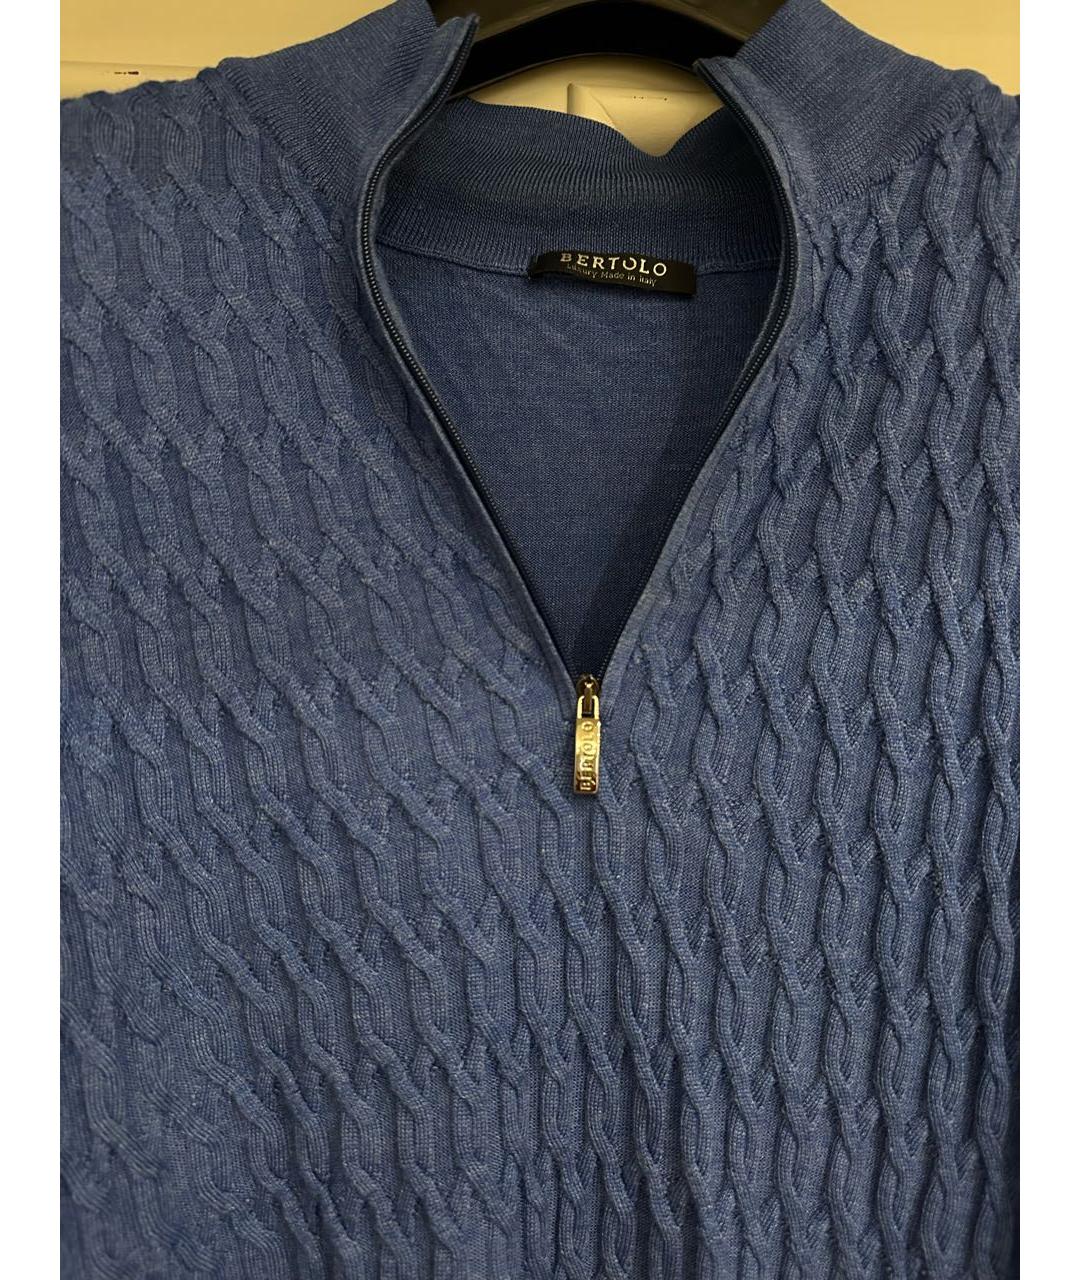 BERTOLO LUXURY MENSWEAR Синий шерстяной джемпер / свитер, фото 3